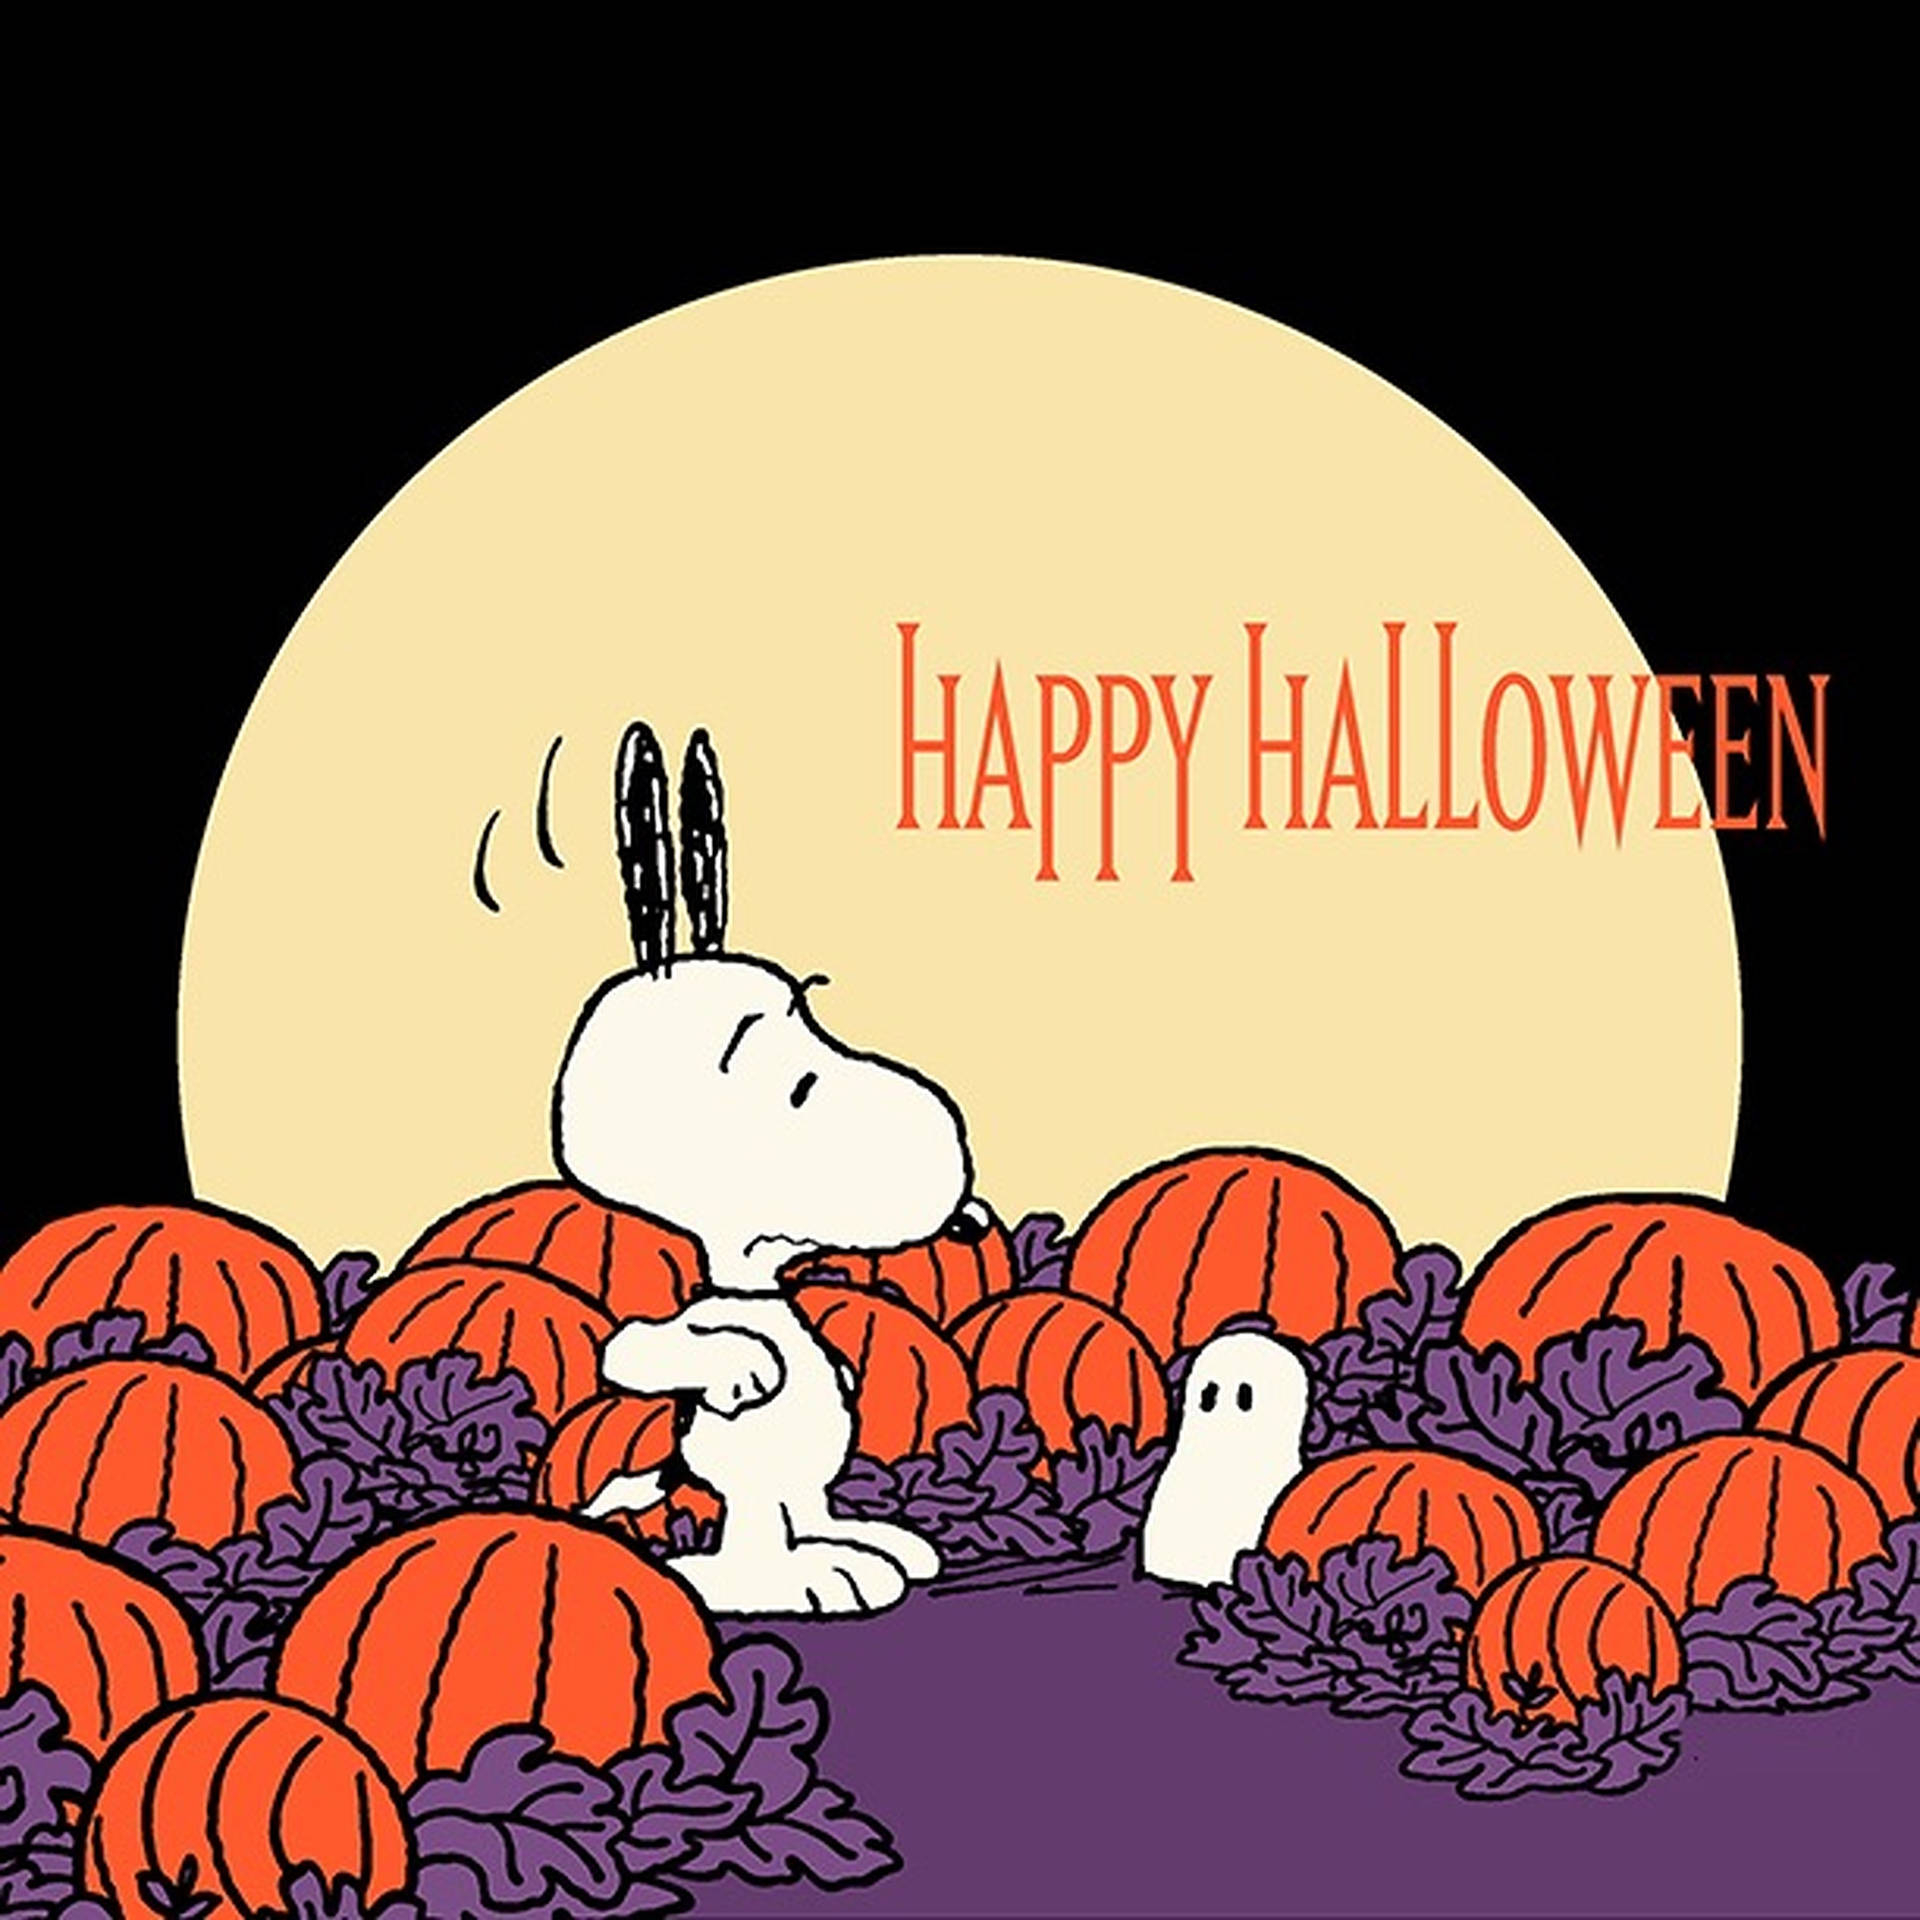 1920x1920 Download Charlie Brown Halloween Snoopy Vector Art Wallpaper | Wallpapers .com